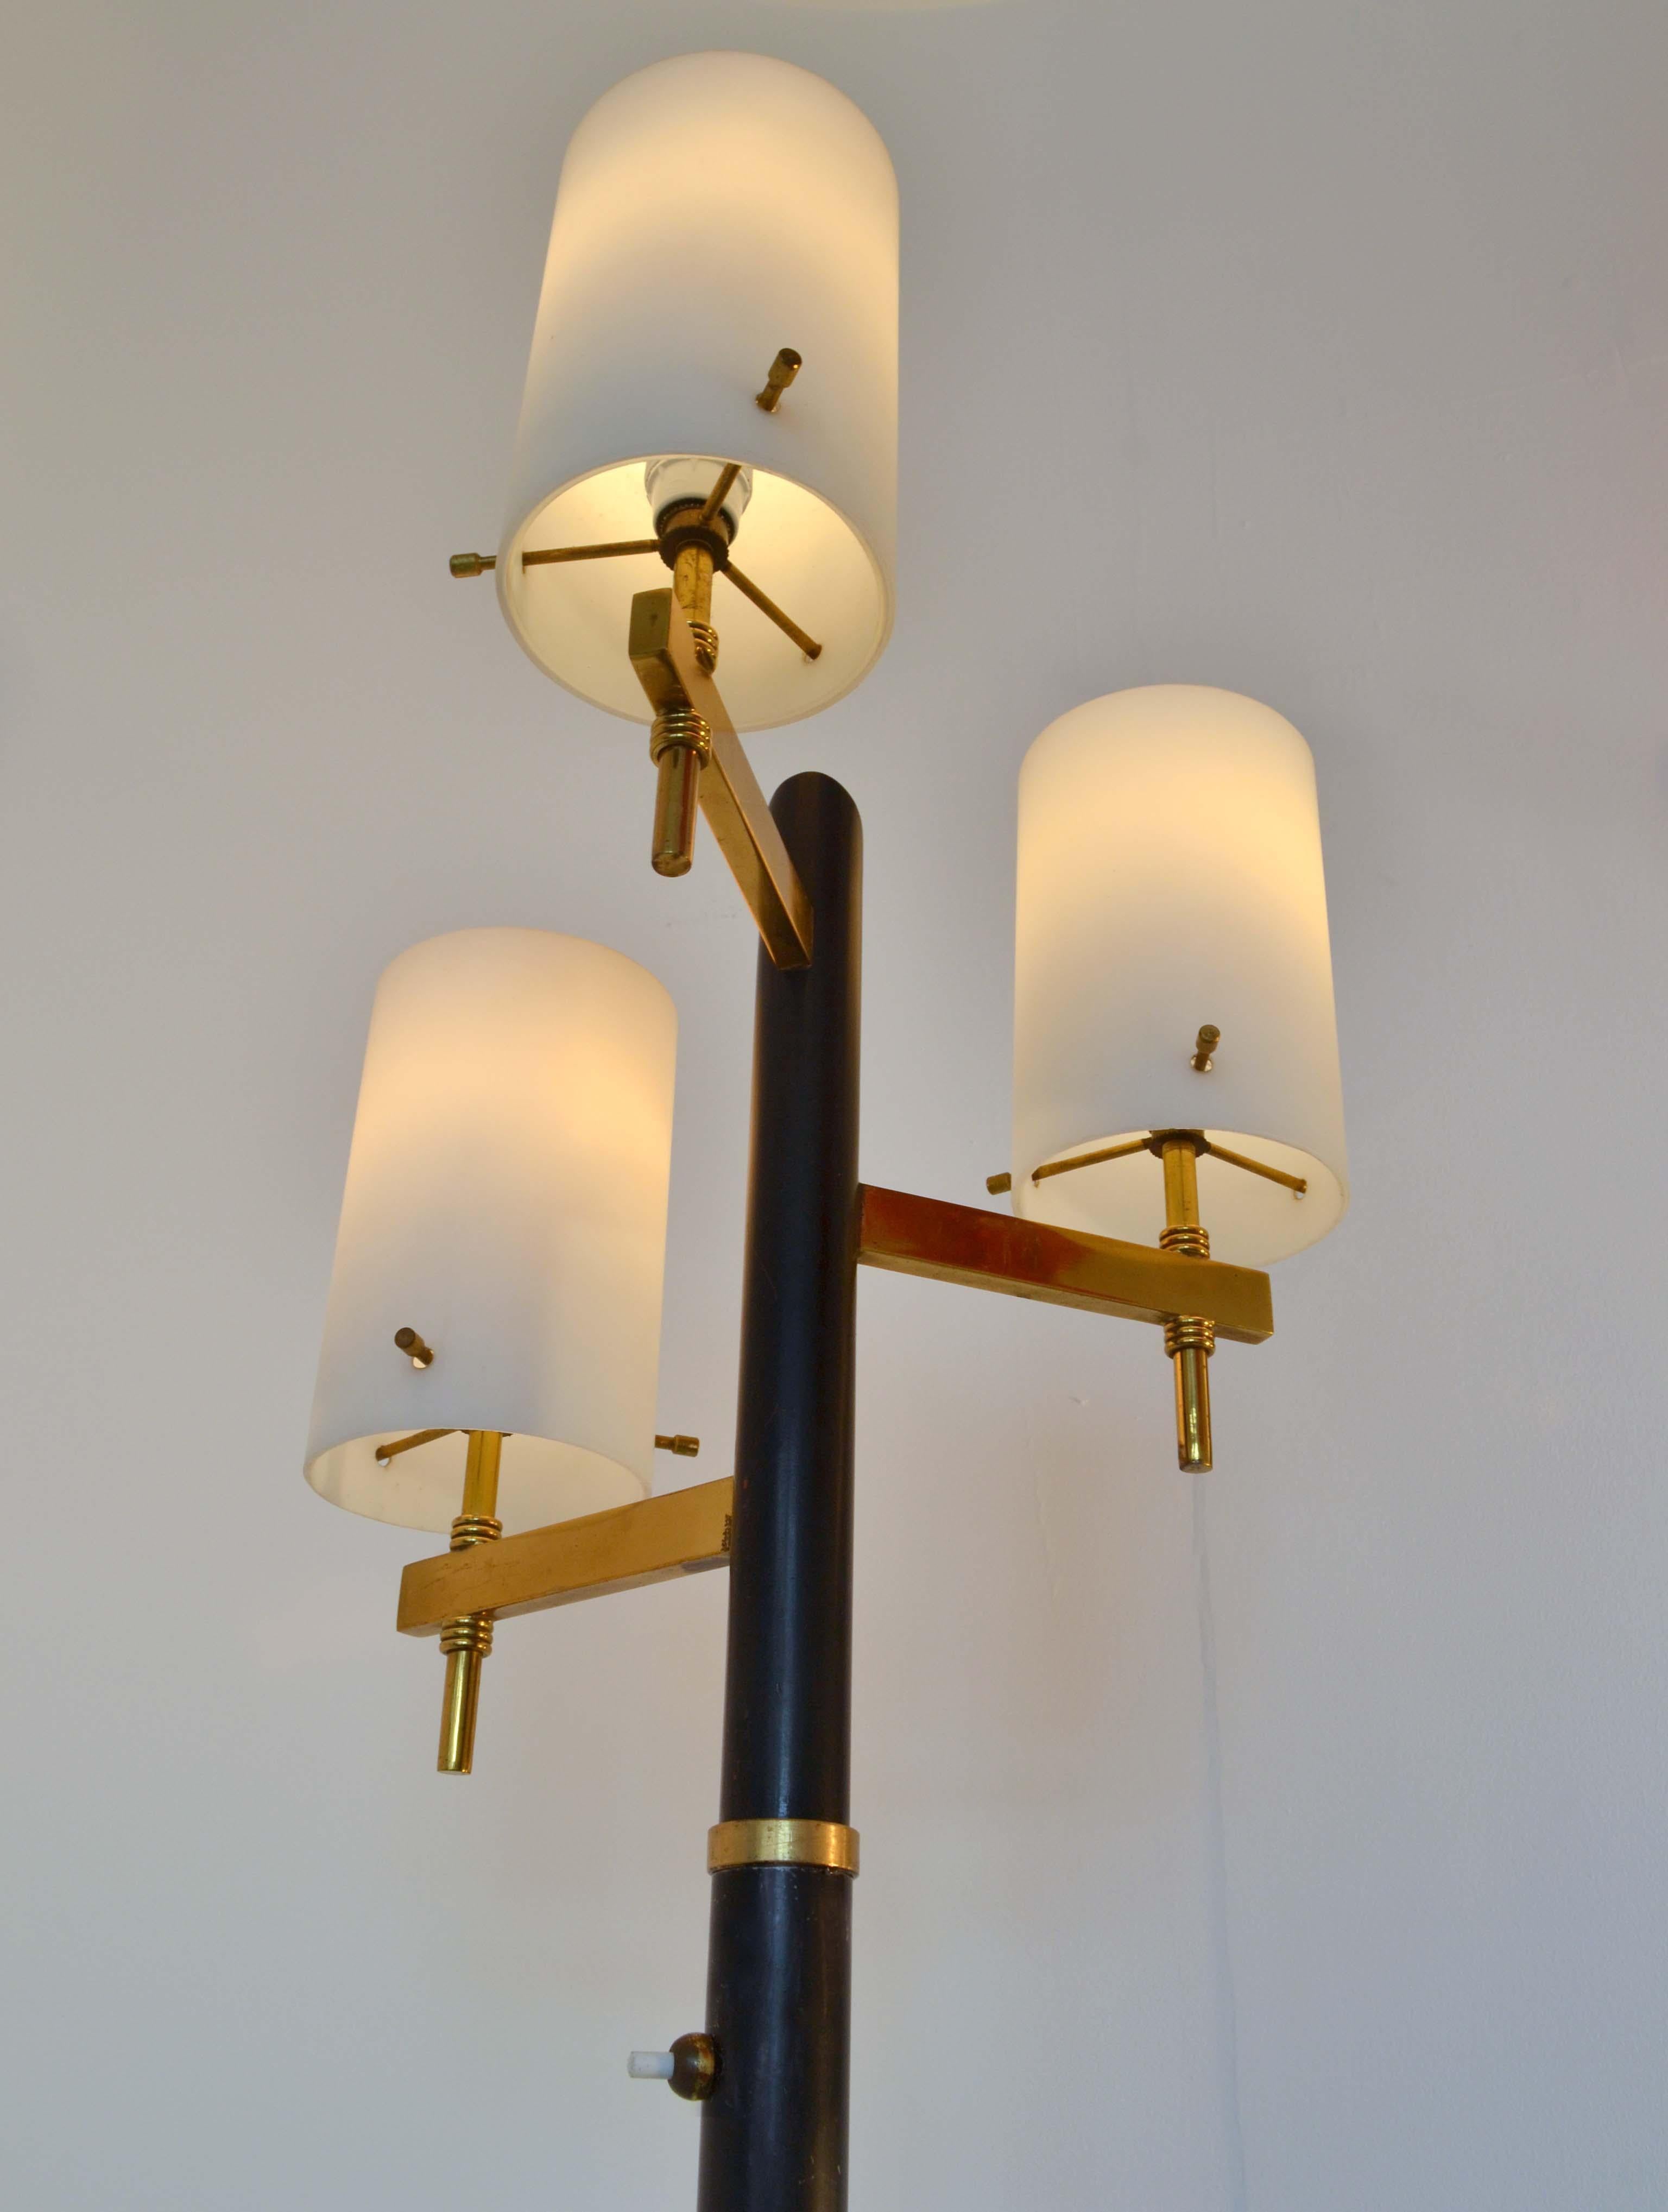 Italian Floor Lamp with Three Glass Shades Stilnovo 1950s Italy